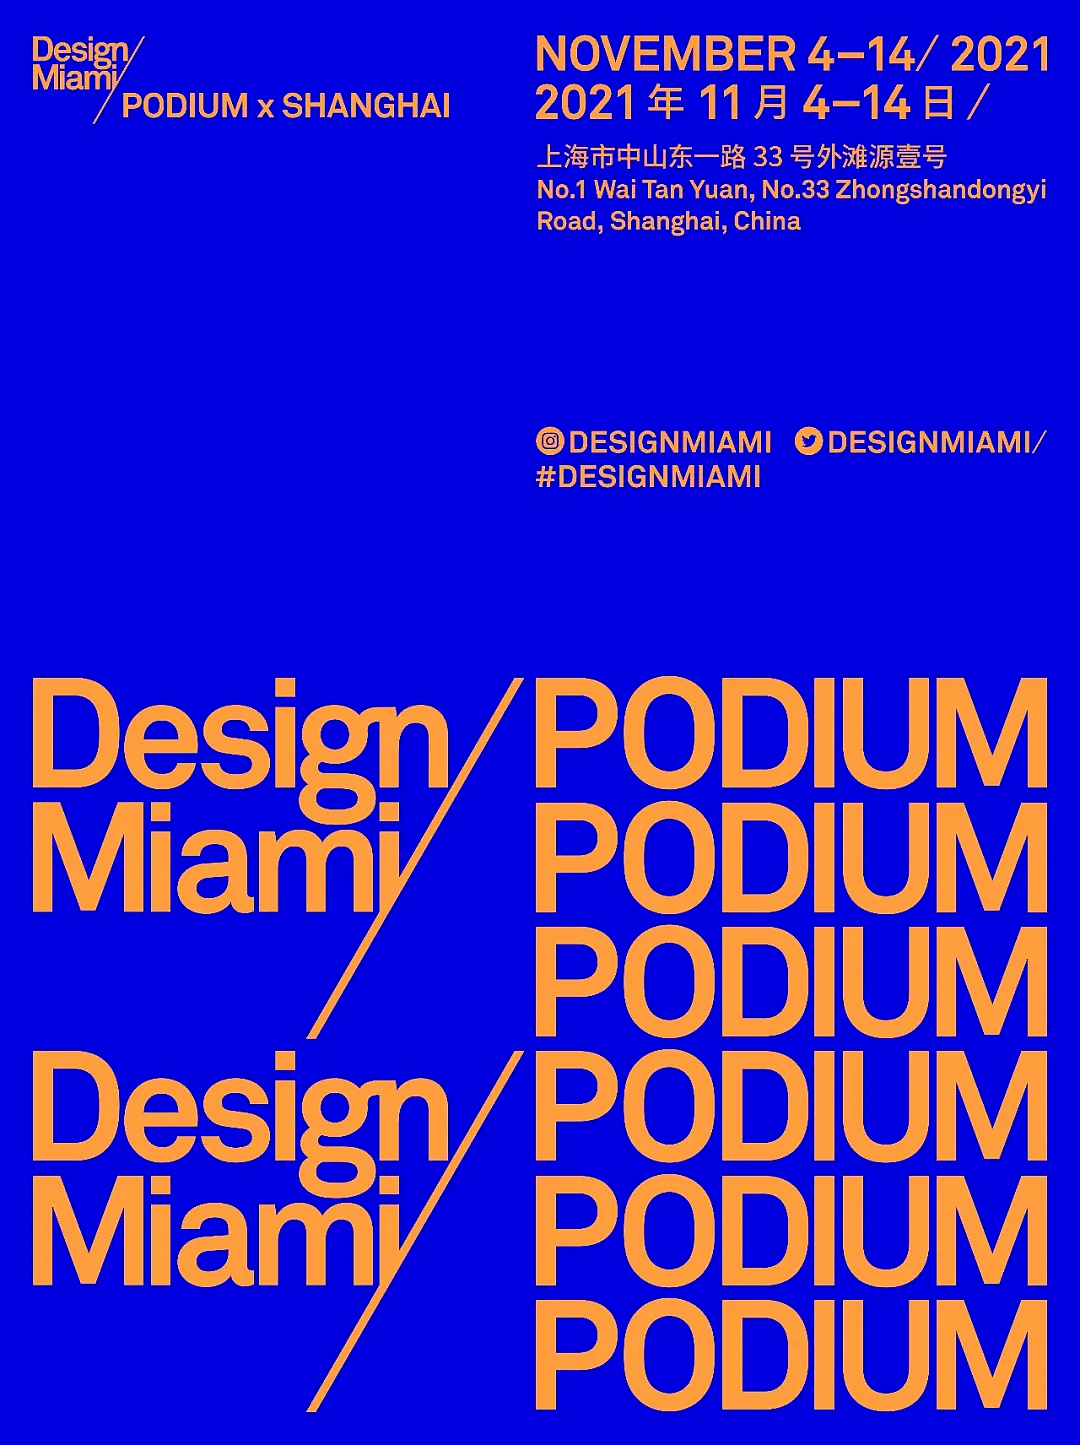 Design Miami/Podium x Shanghai 贵宾预览日盛况回顾 - 1